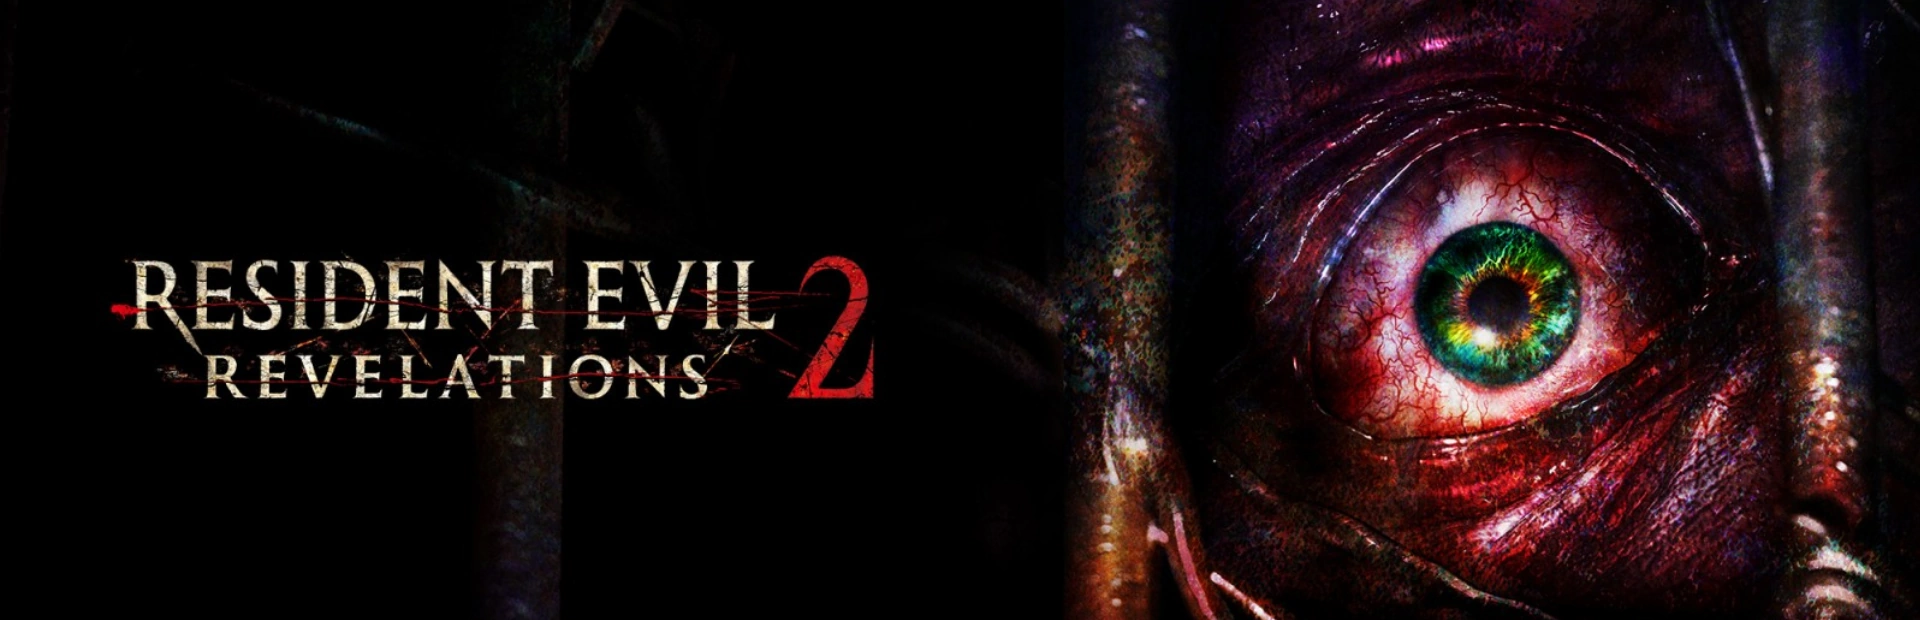 Resident Evil Revelations 2.banner1